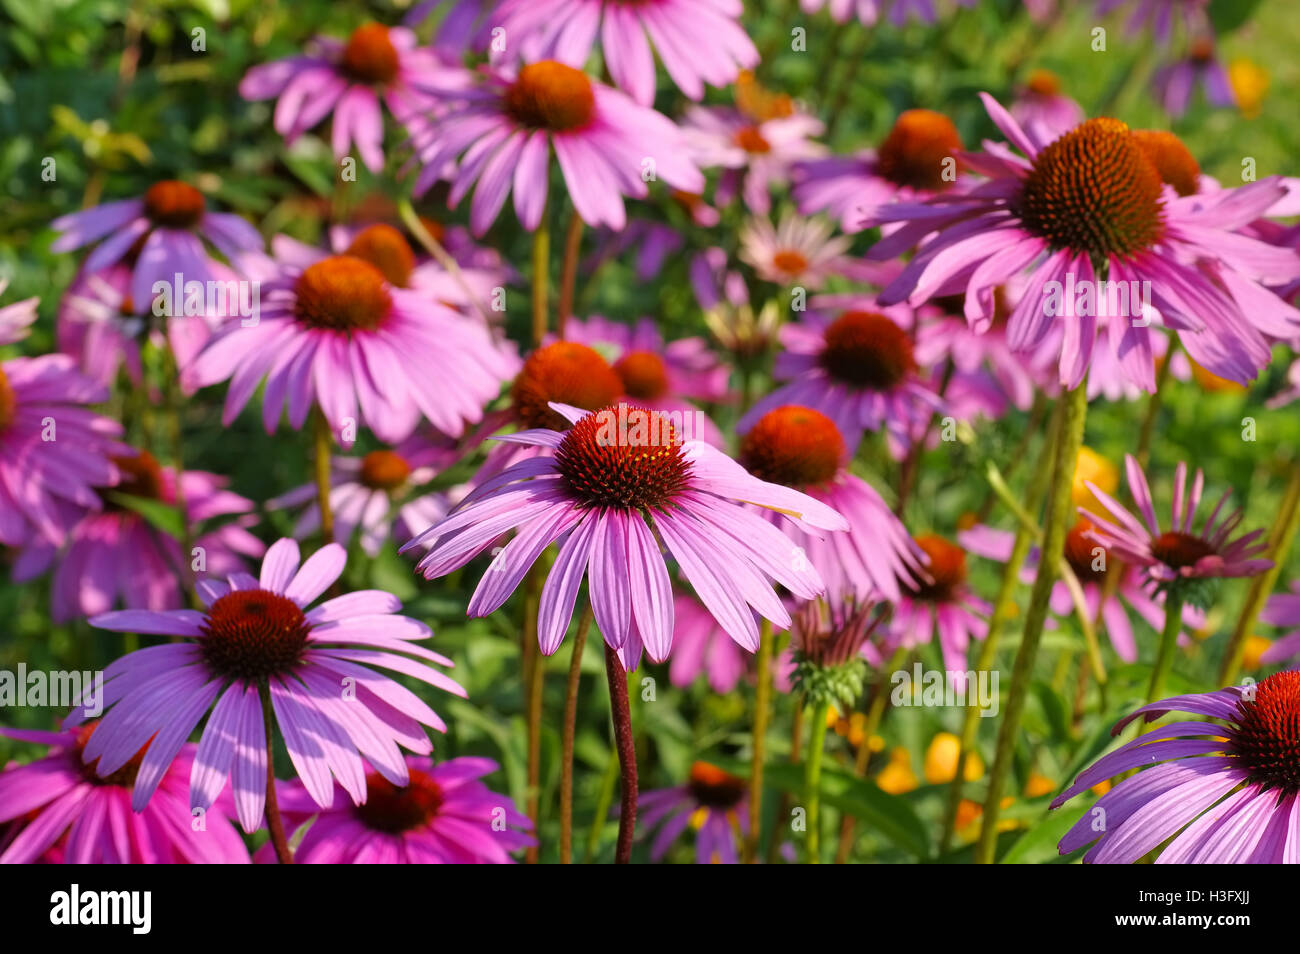 Purpur-Sonnenhut Sommerblume - eine schöne, Echinacea purpurea Échinacée pourpre, rose, fleur d'été de nice Banque D'Images